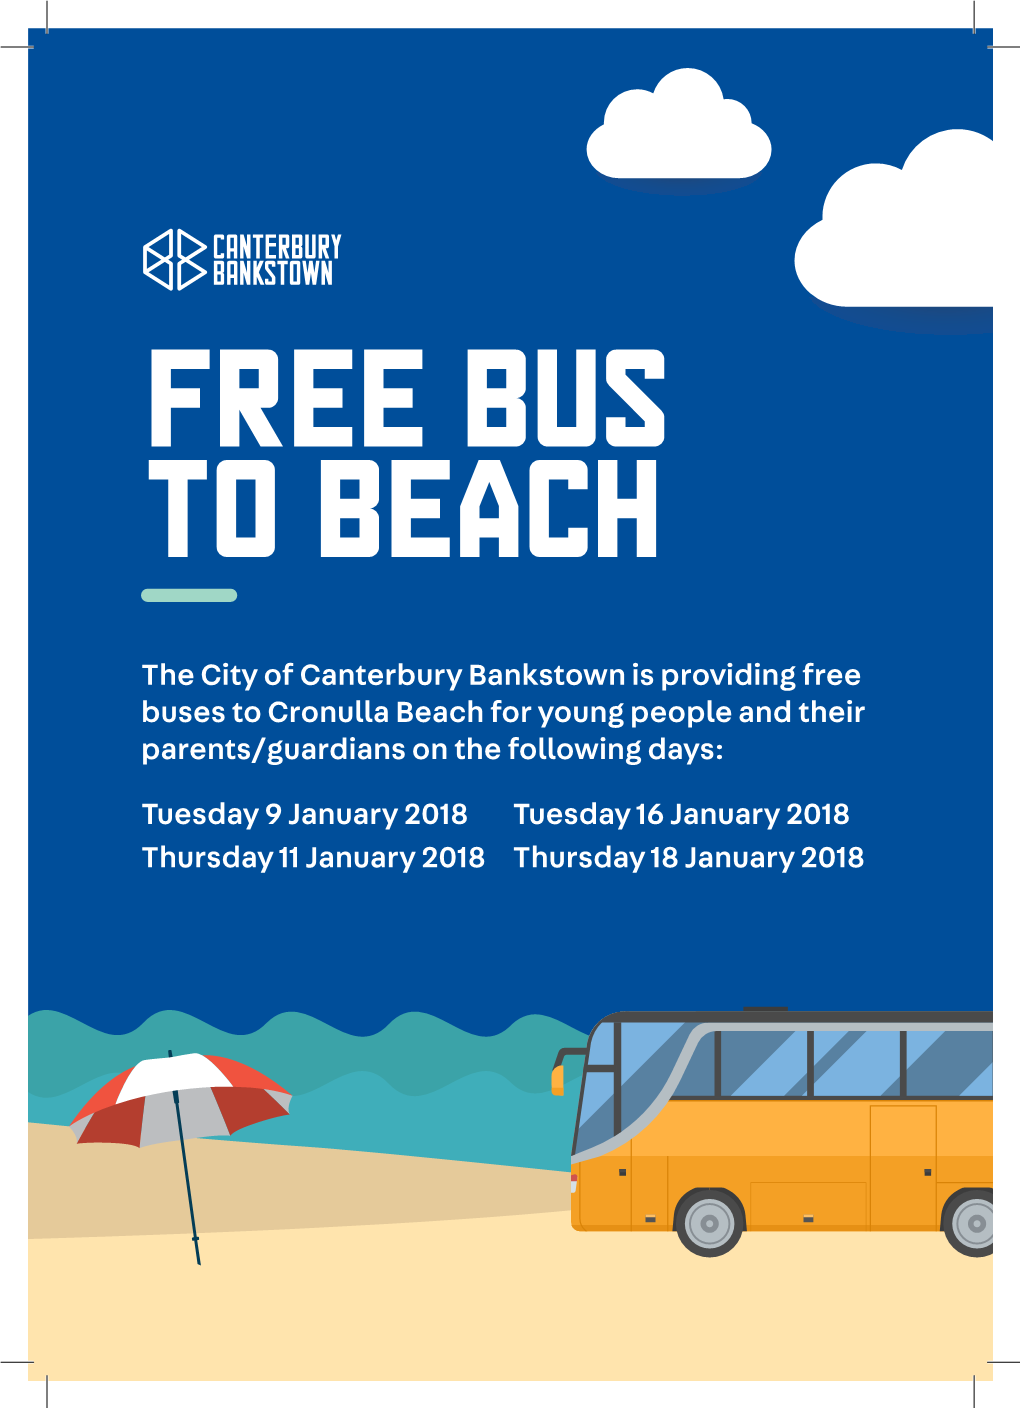 Free Bus to Beach